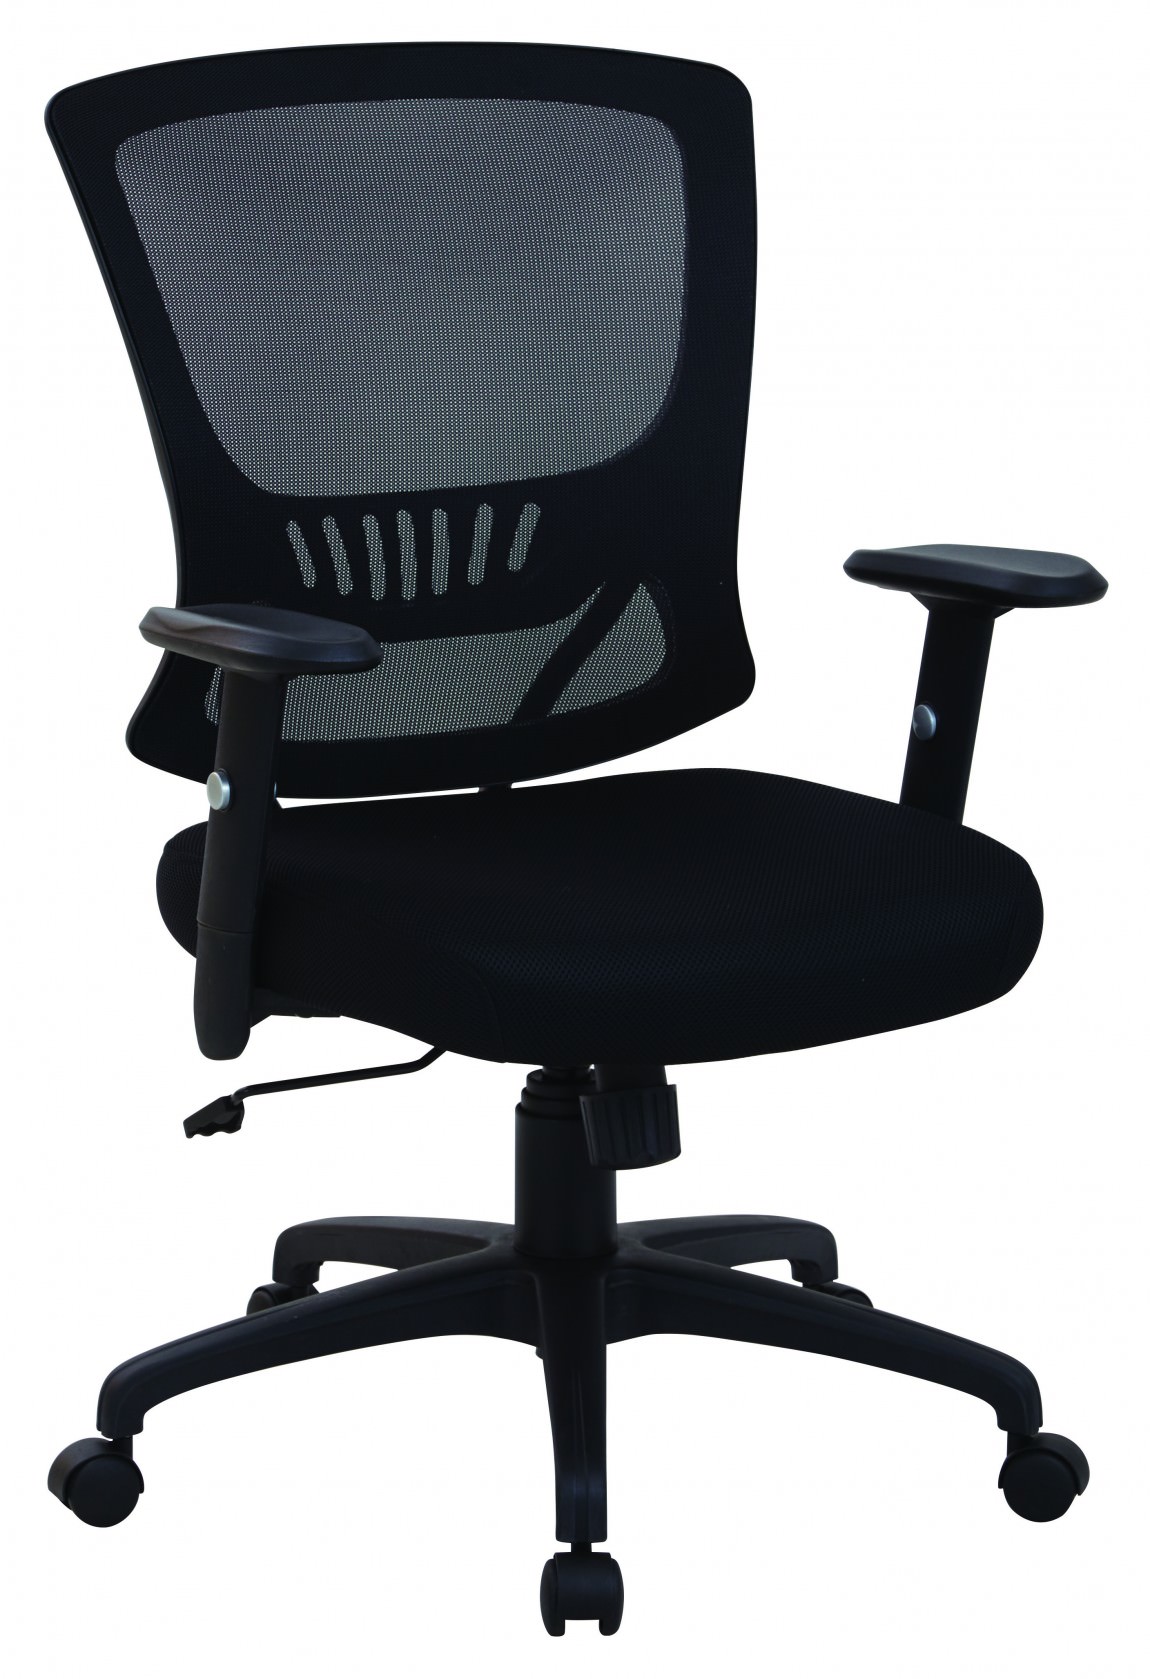 Black Mesh Back Task Chair 25.25 x 23.5 x 38.25-41 : EM91027-3